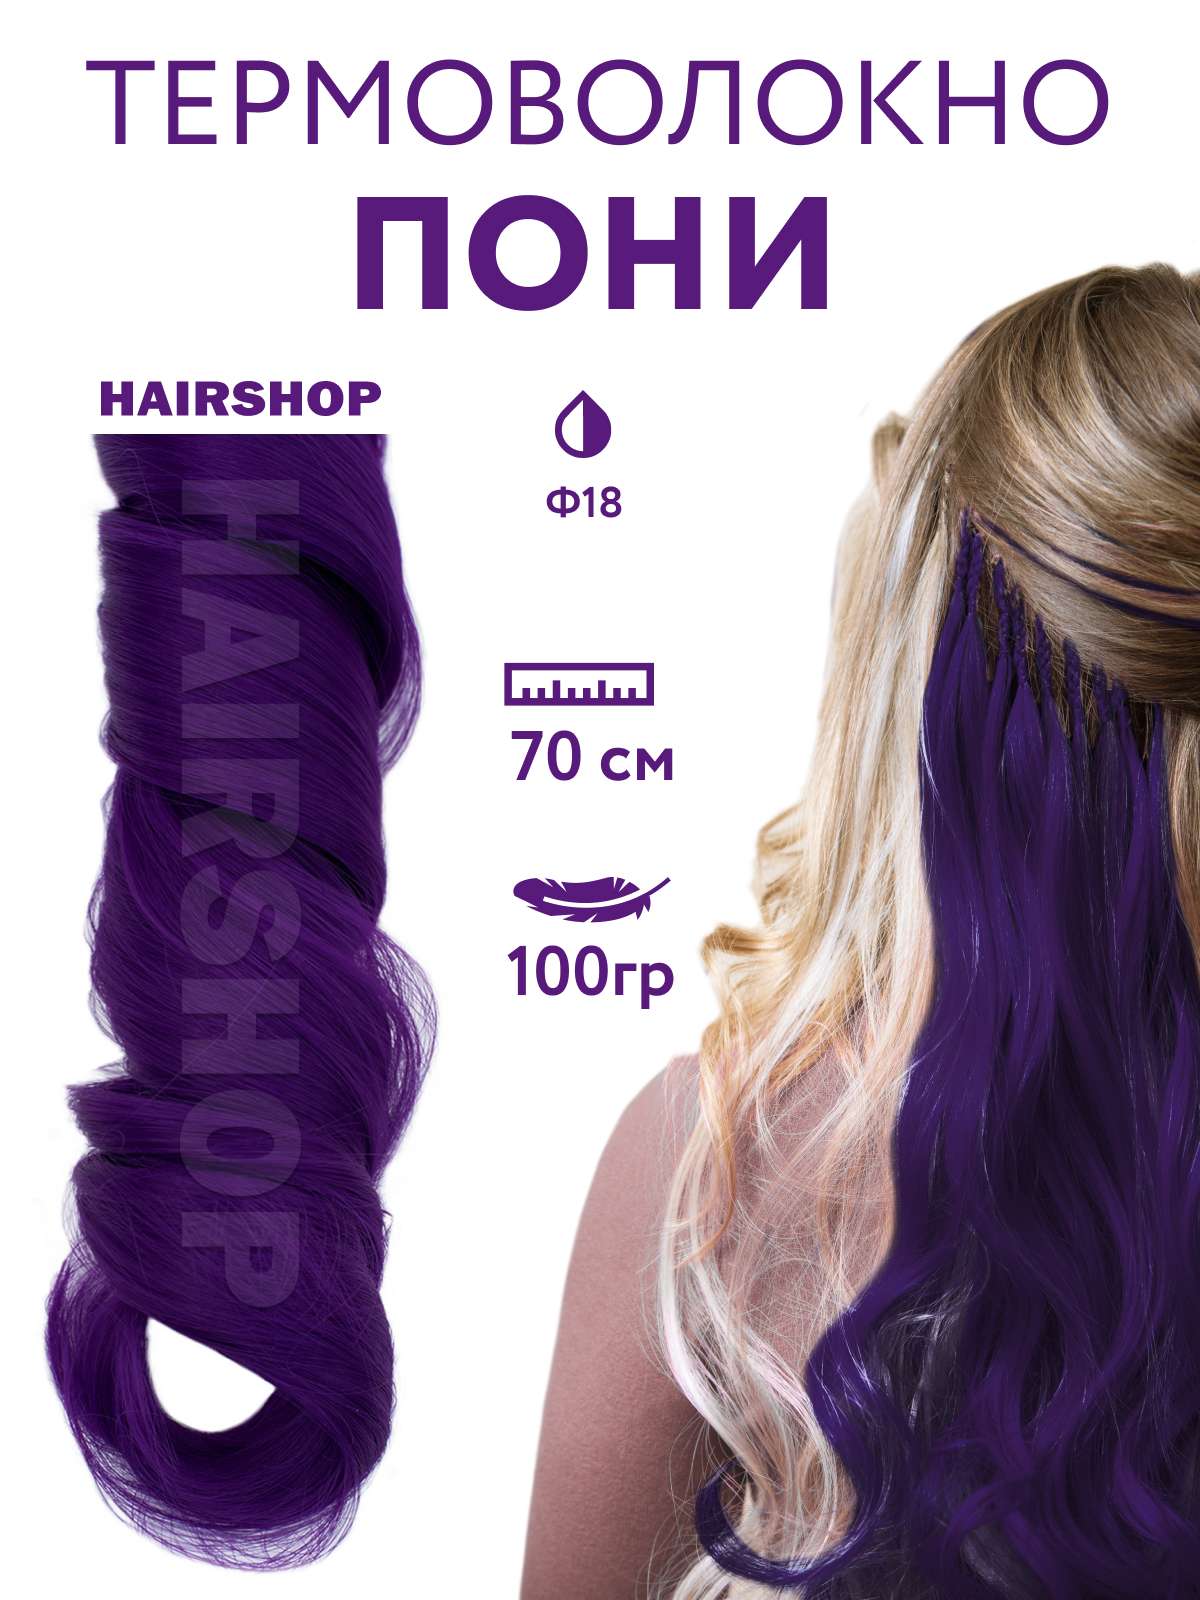 Канекалон HAIRSHOP Пони HairUp для точечного афронаращивания Ф18 Темно-фиолетовый 1,4м